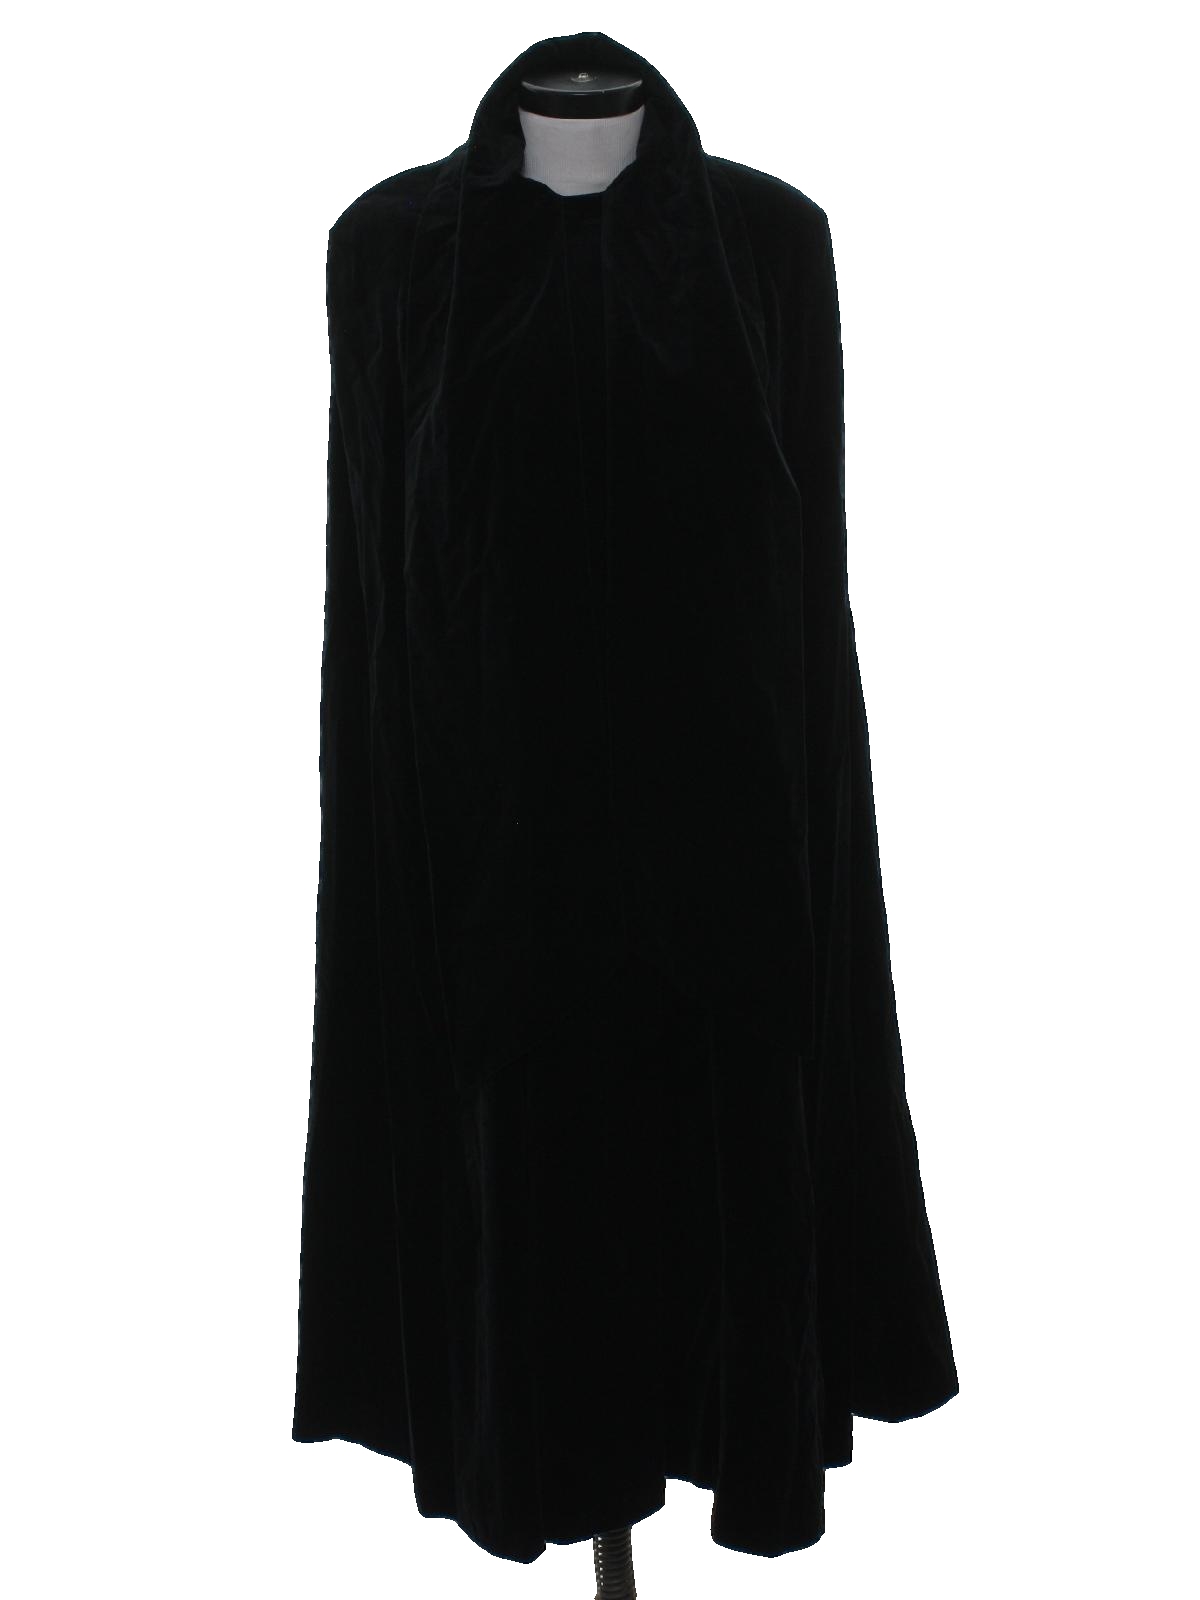 Vintage 1980's Jacket: 80s -Maxx Meren- Womens black background cotton ...